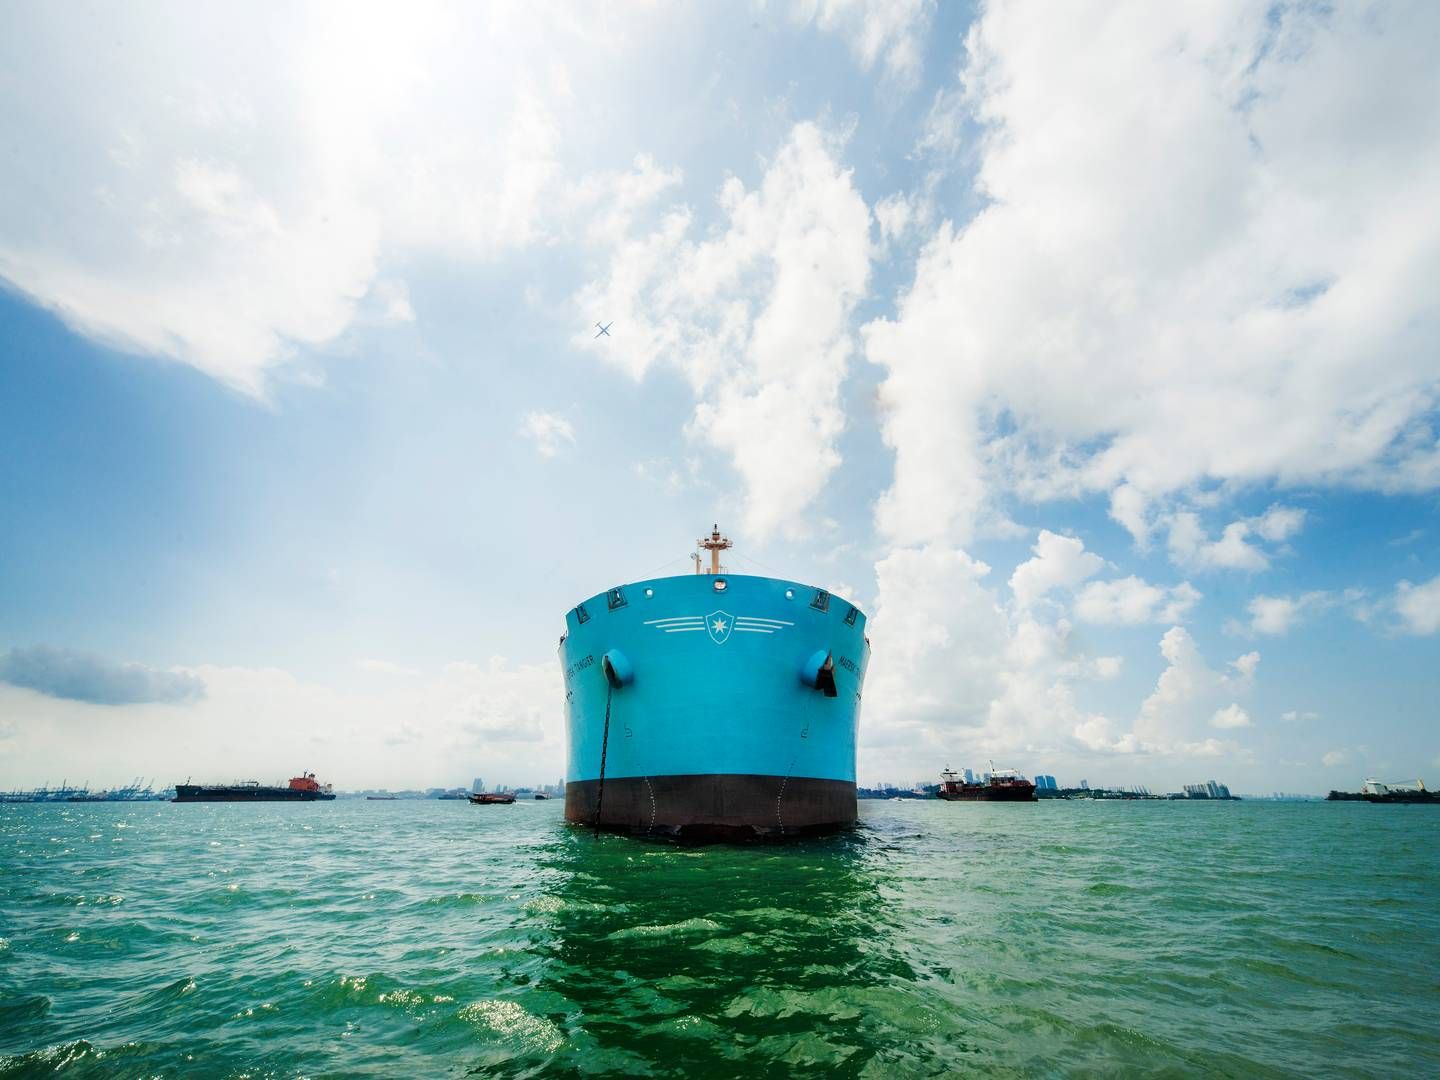 Arkivfoto. Billedet viser et skib fra Maersk Tankers, men ikke Maersk Magellan, som bliver omtalt i artiklen. | Foto: Pr / Maersk Tankers